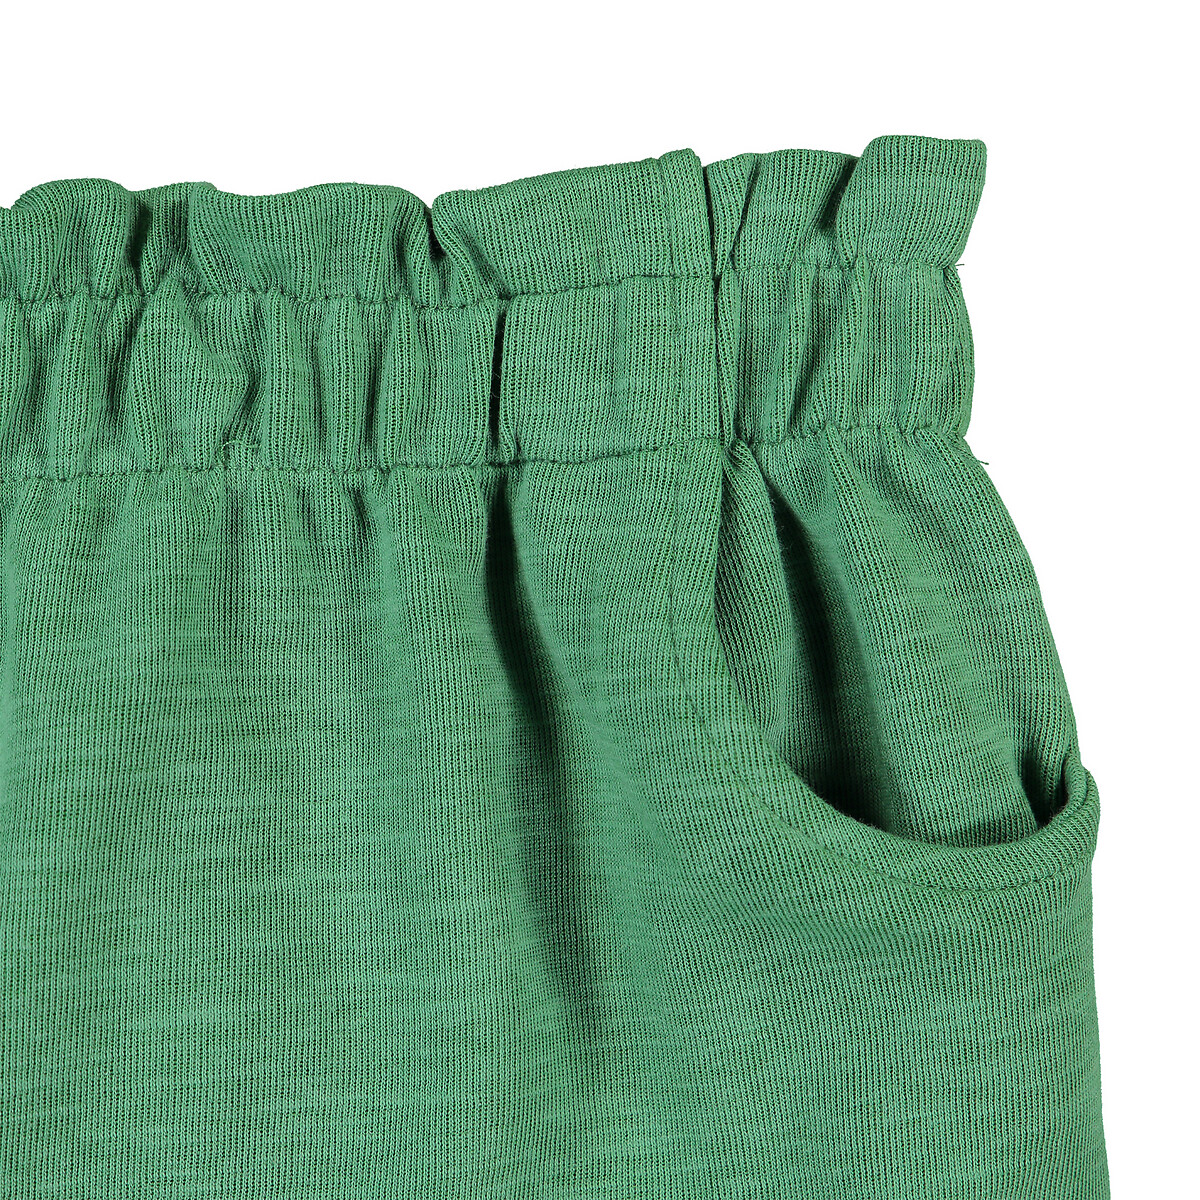 Юбка La Redoute Прямая на эластичном поясе 3-12 лет 8 лет - 126 см зеленый, размер 8 - фото 4